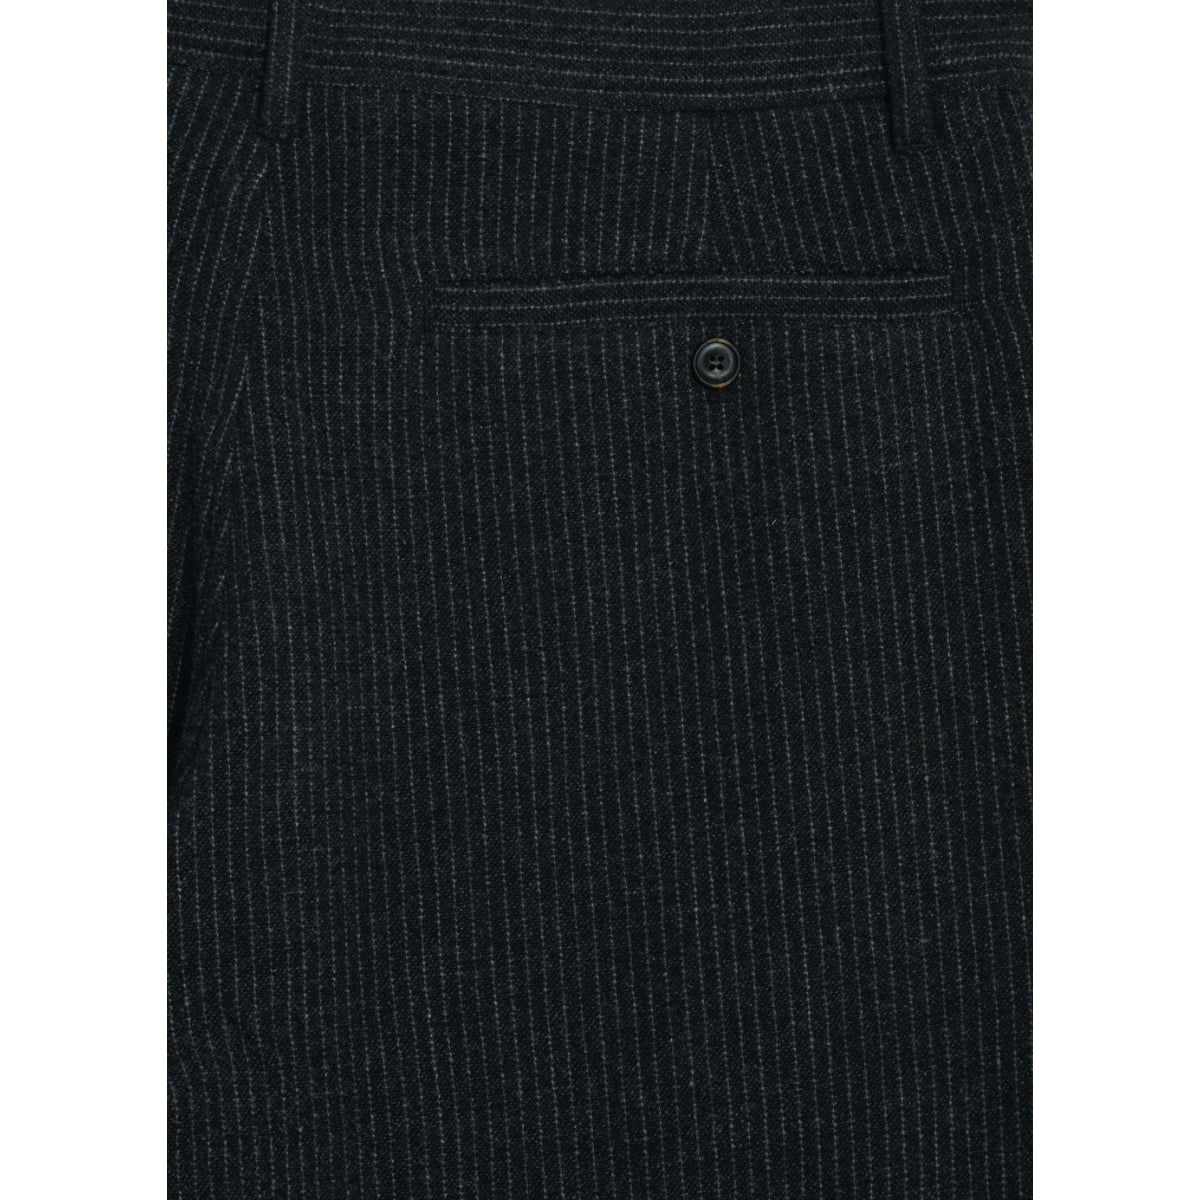 Hansen Ken 26-44-2 black wool pin